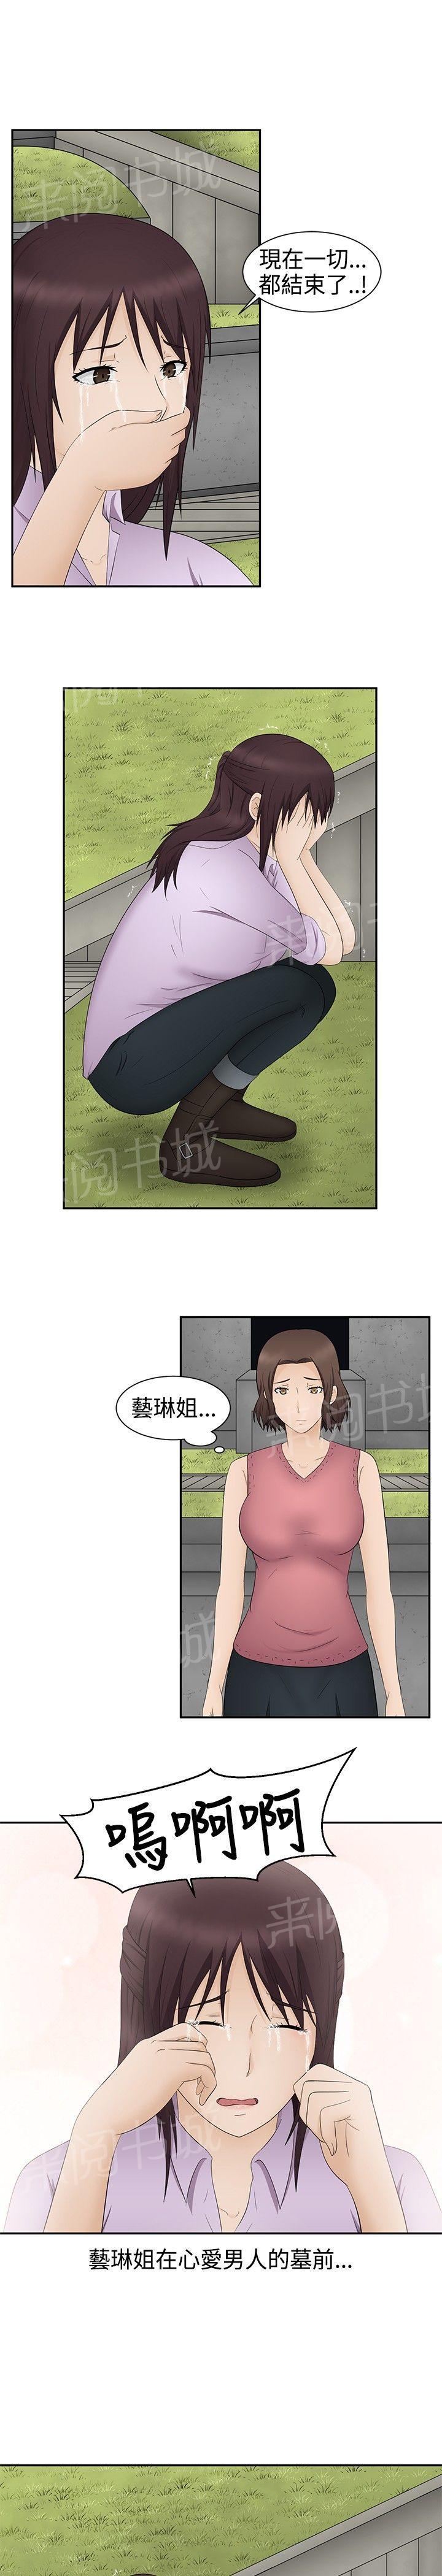 韩国污漫画 掙脫牢籠 第20话 13